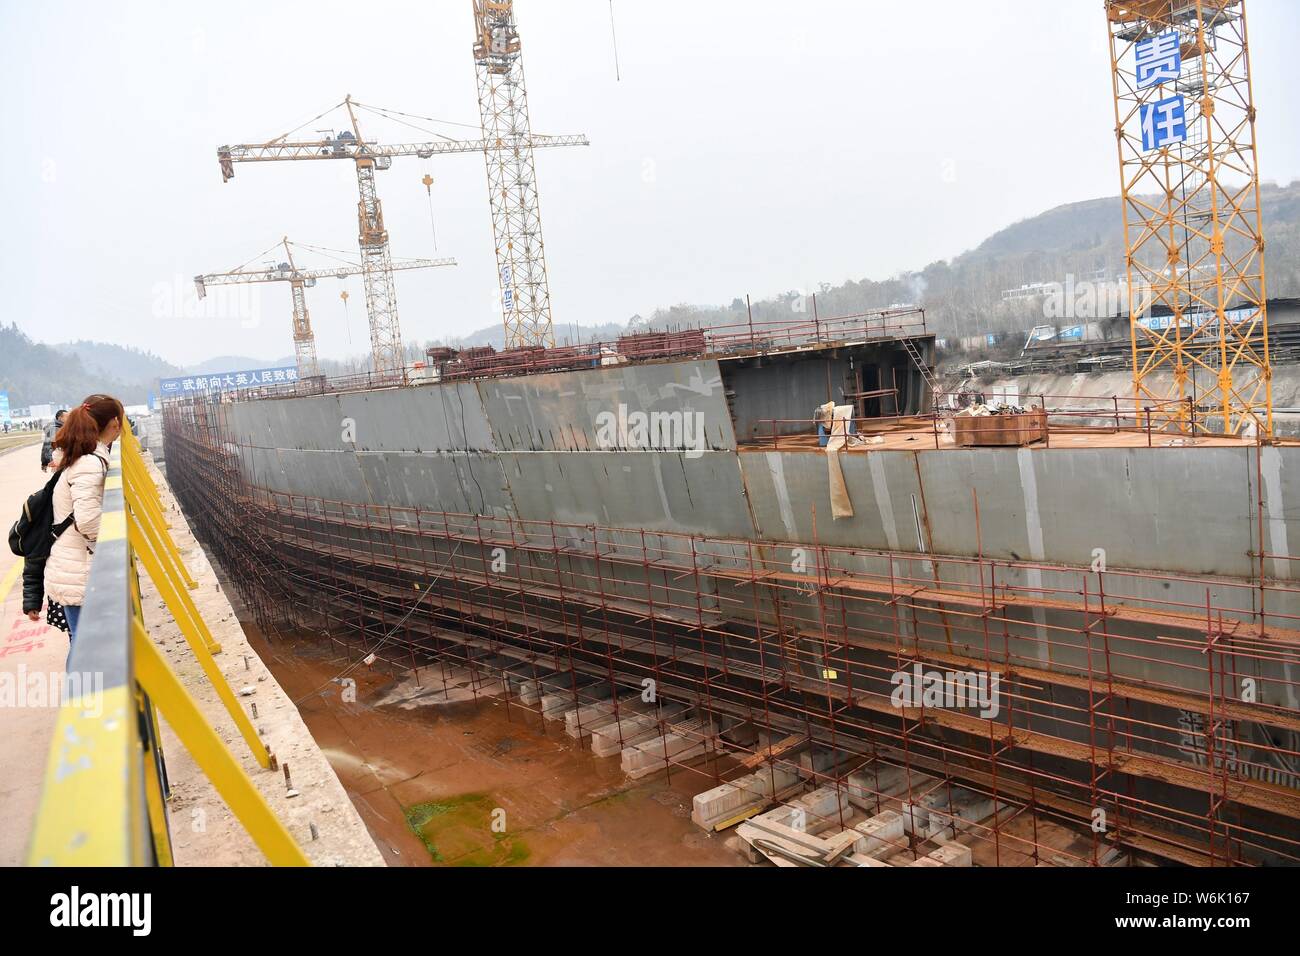 Vue sur le site de construction d'une réplique grandeur nature du paquebot Titanic dans le comté de Daying, ville de Suining, au sud-ouest du Sichuan Chine provinc Banque D'Images